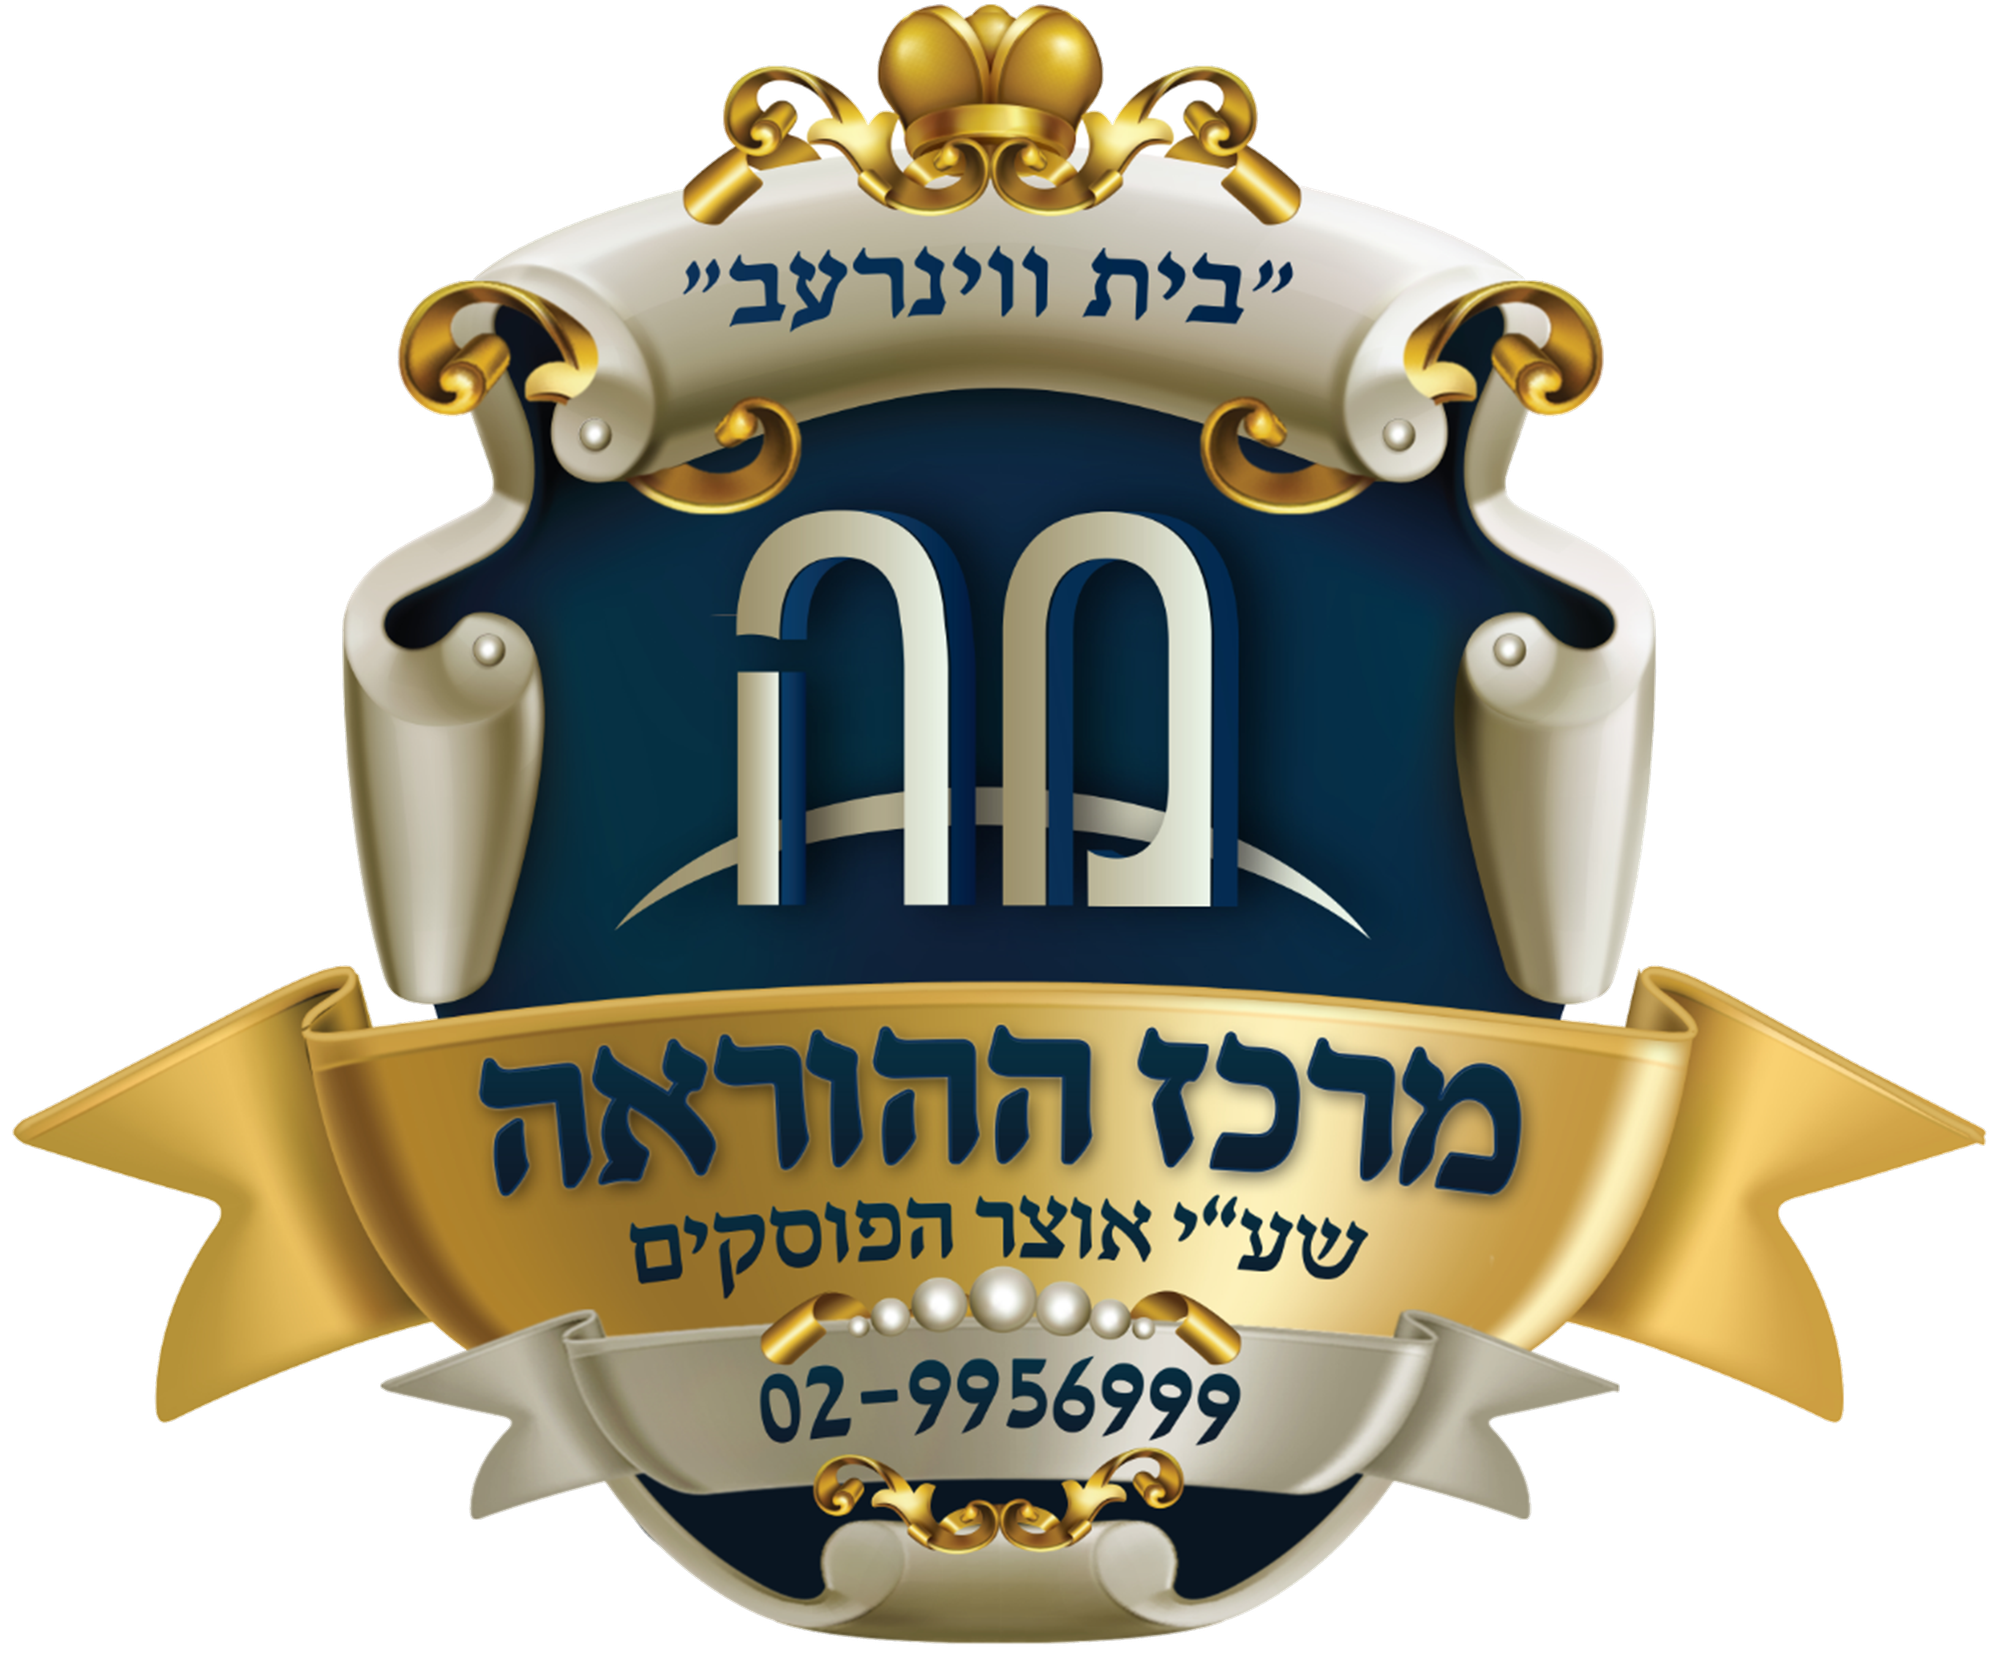 The great genius Rabbi Naftali Nusboim Shlita